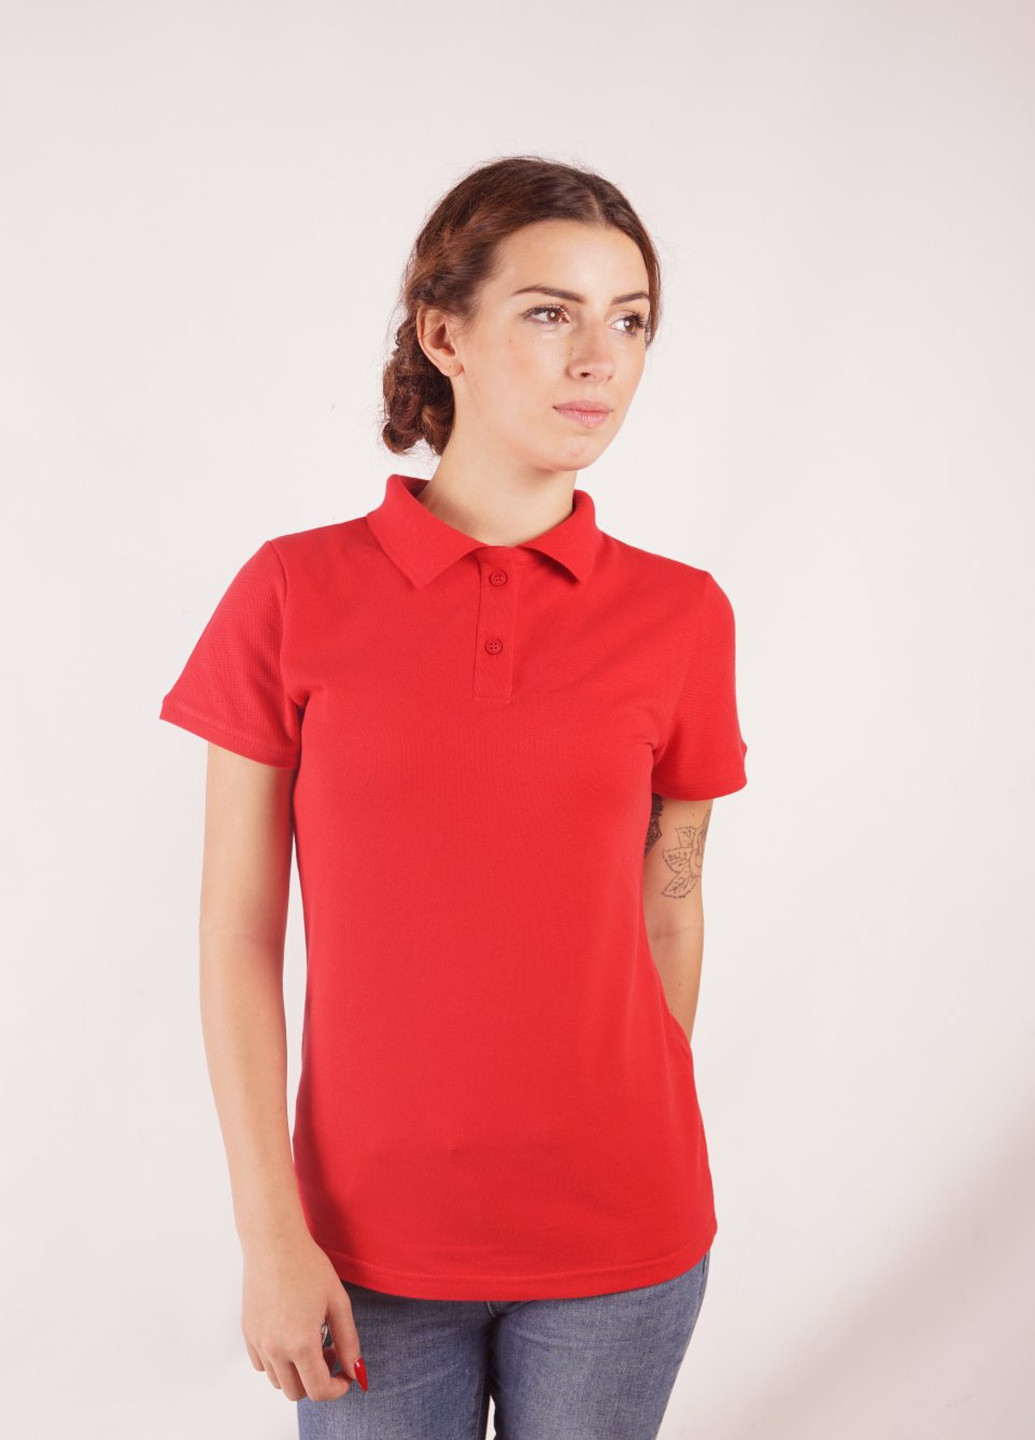 Красная женская футболка-футболка поло женская TvoePolo однотонная